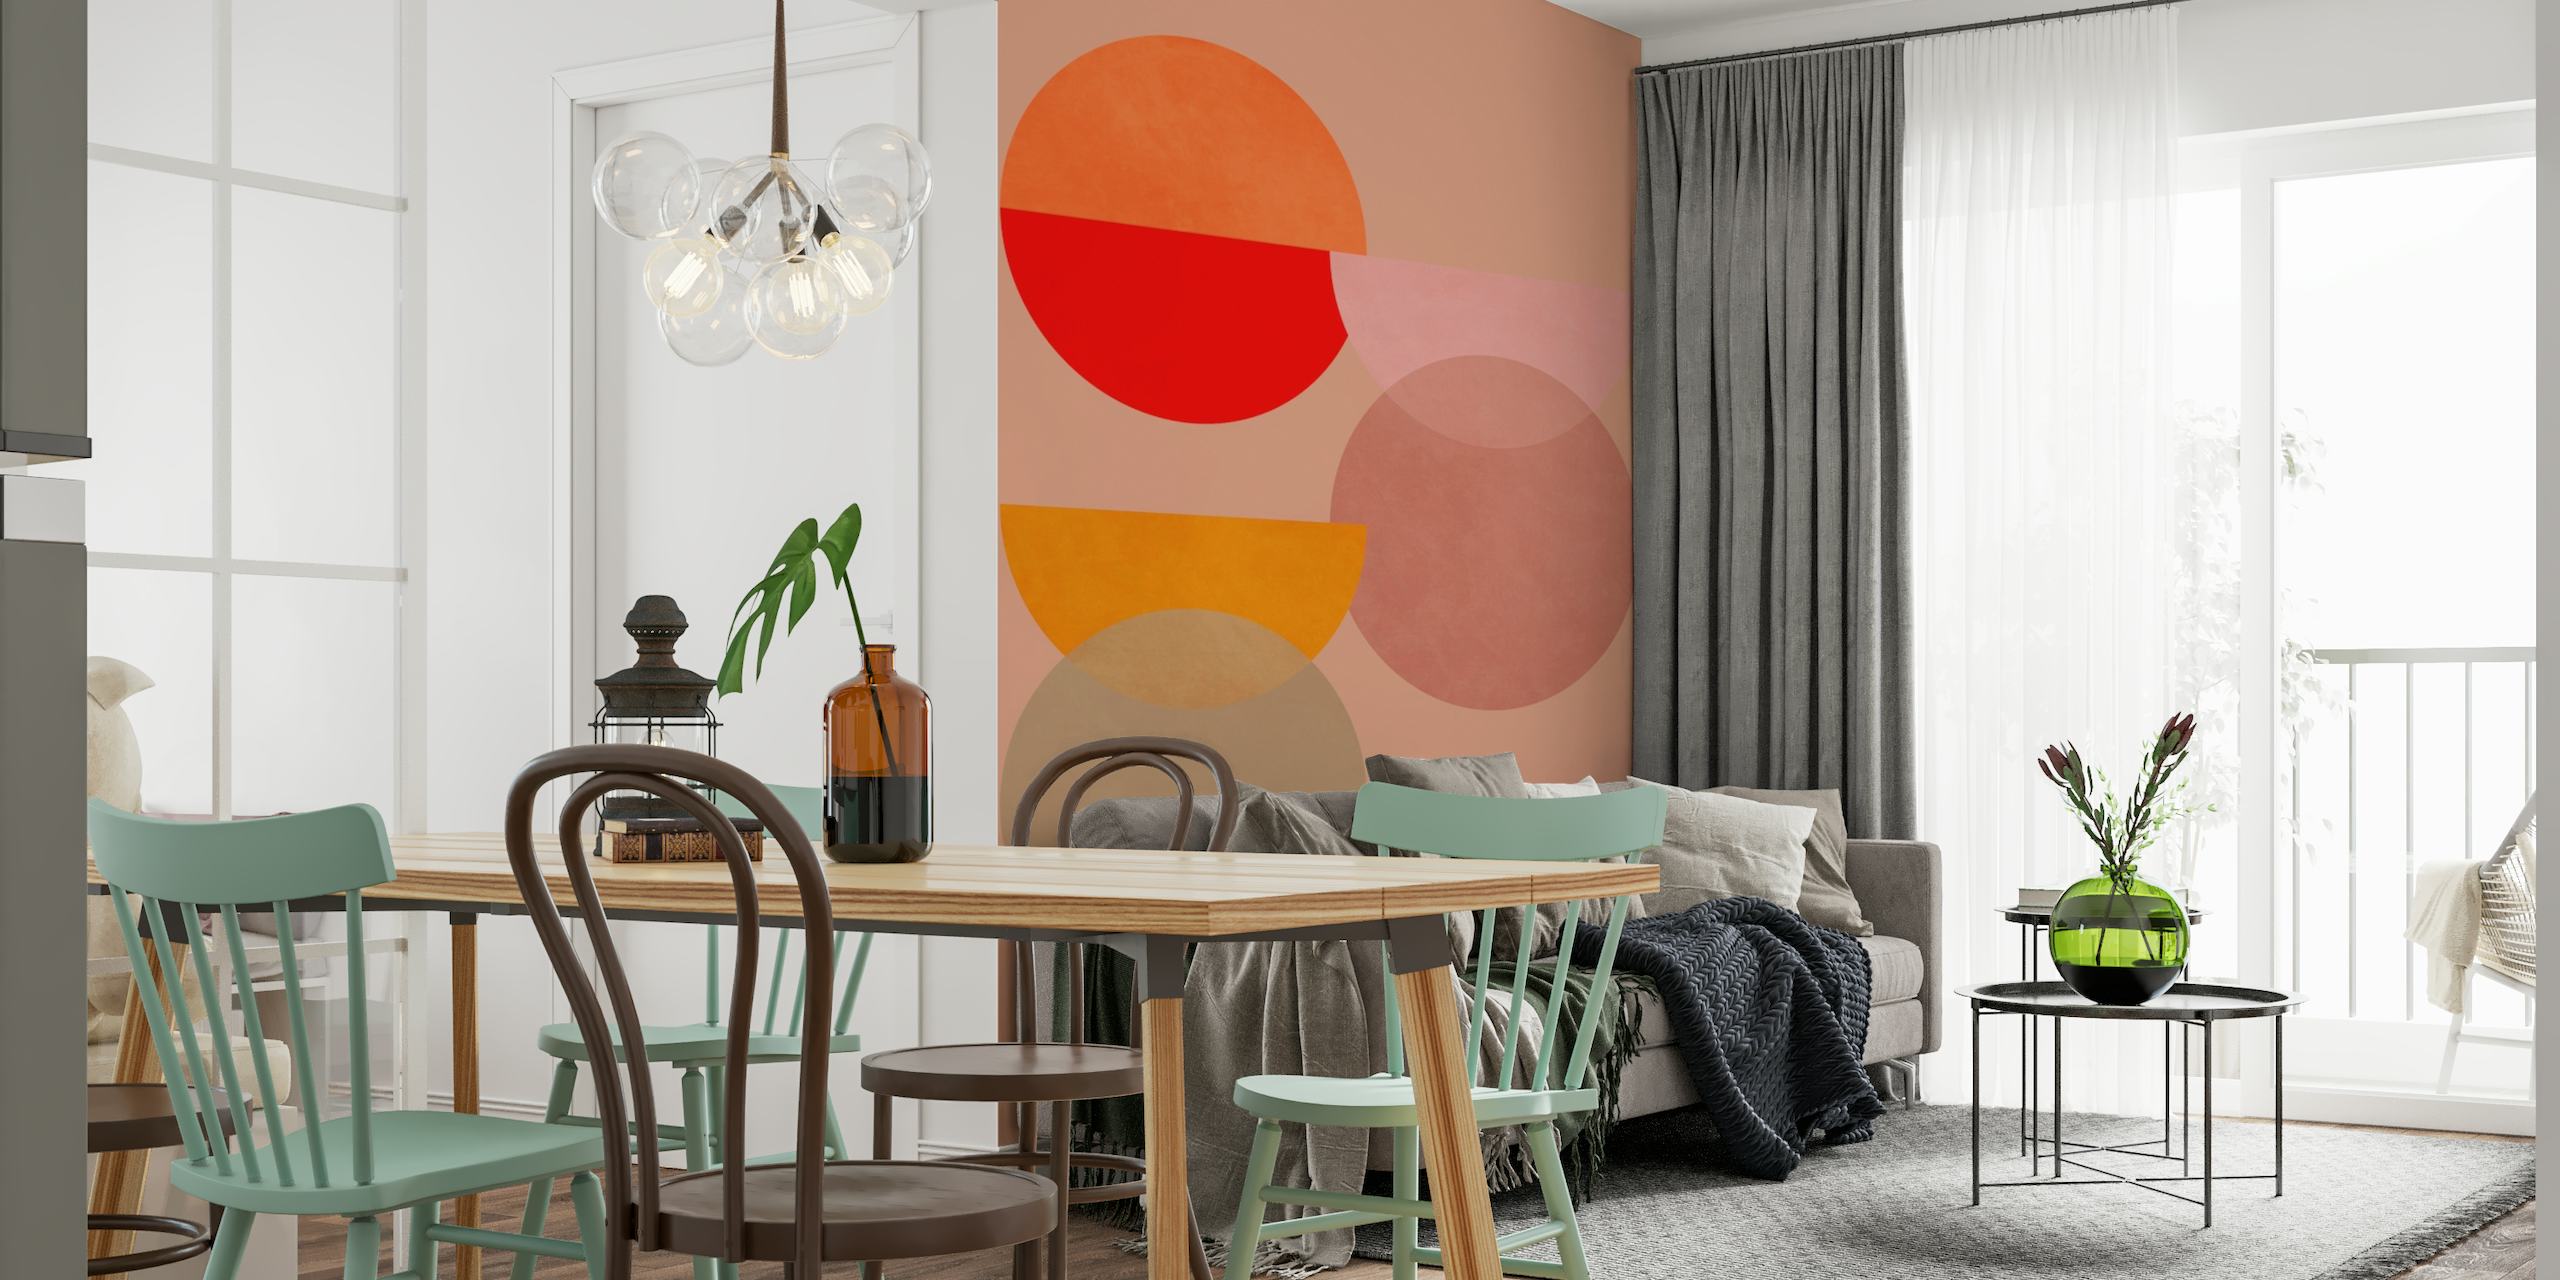 Abstraktes geometrisches Wandbild mit überlappenden Kreisen in den Farbtönen Terrakotta, Pfirsich und Altrosa auf einem sanften Hintergrund.